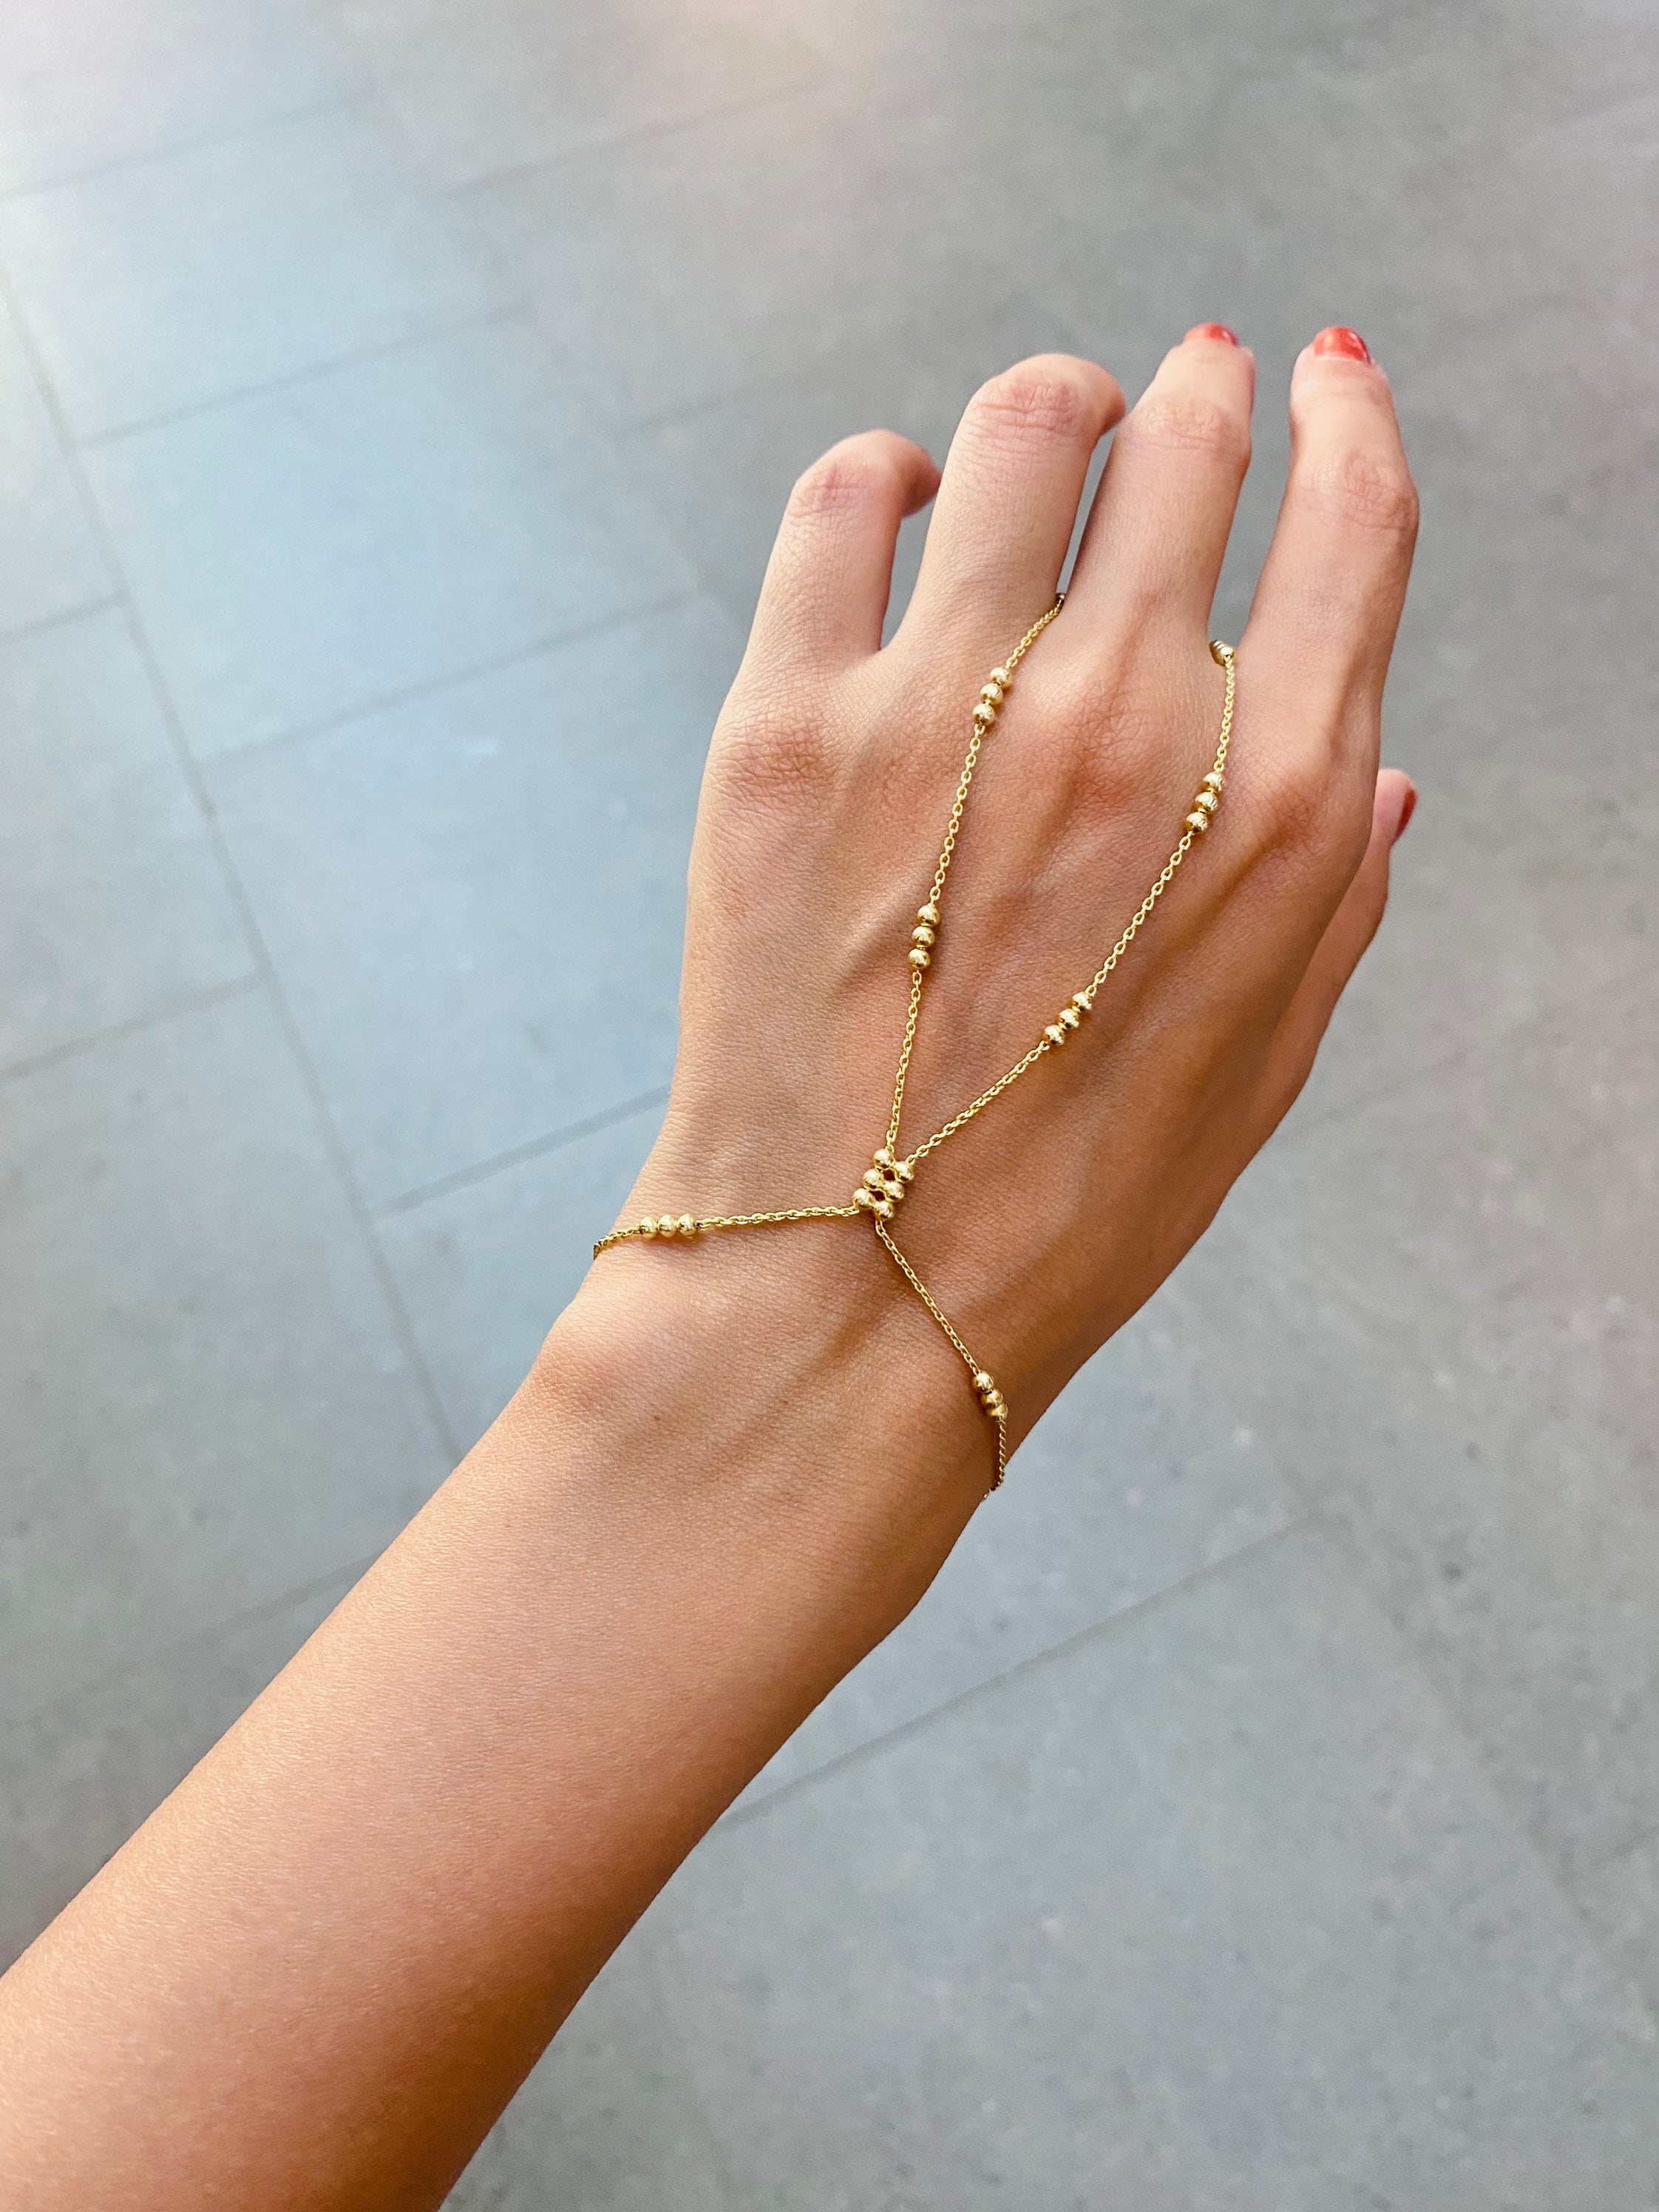 Buy Olbye Finger Ring Bracelet Gold Slave Bracelet Hand Chain Dainty Finger  Wrist Bracelet Everyday Jewelry for Women and Teen Girls at Amazonin